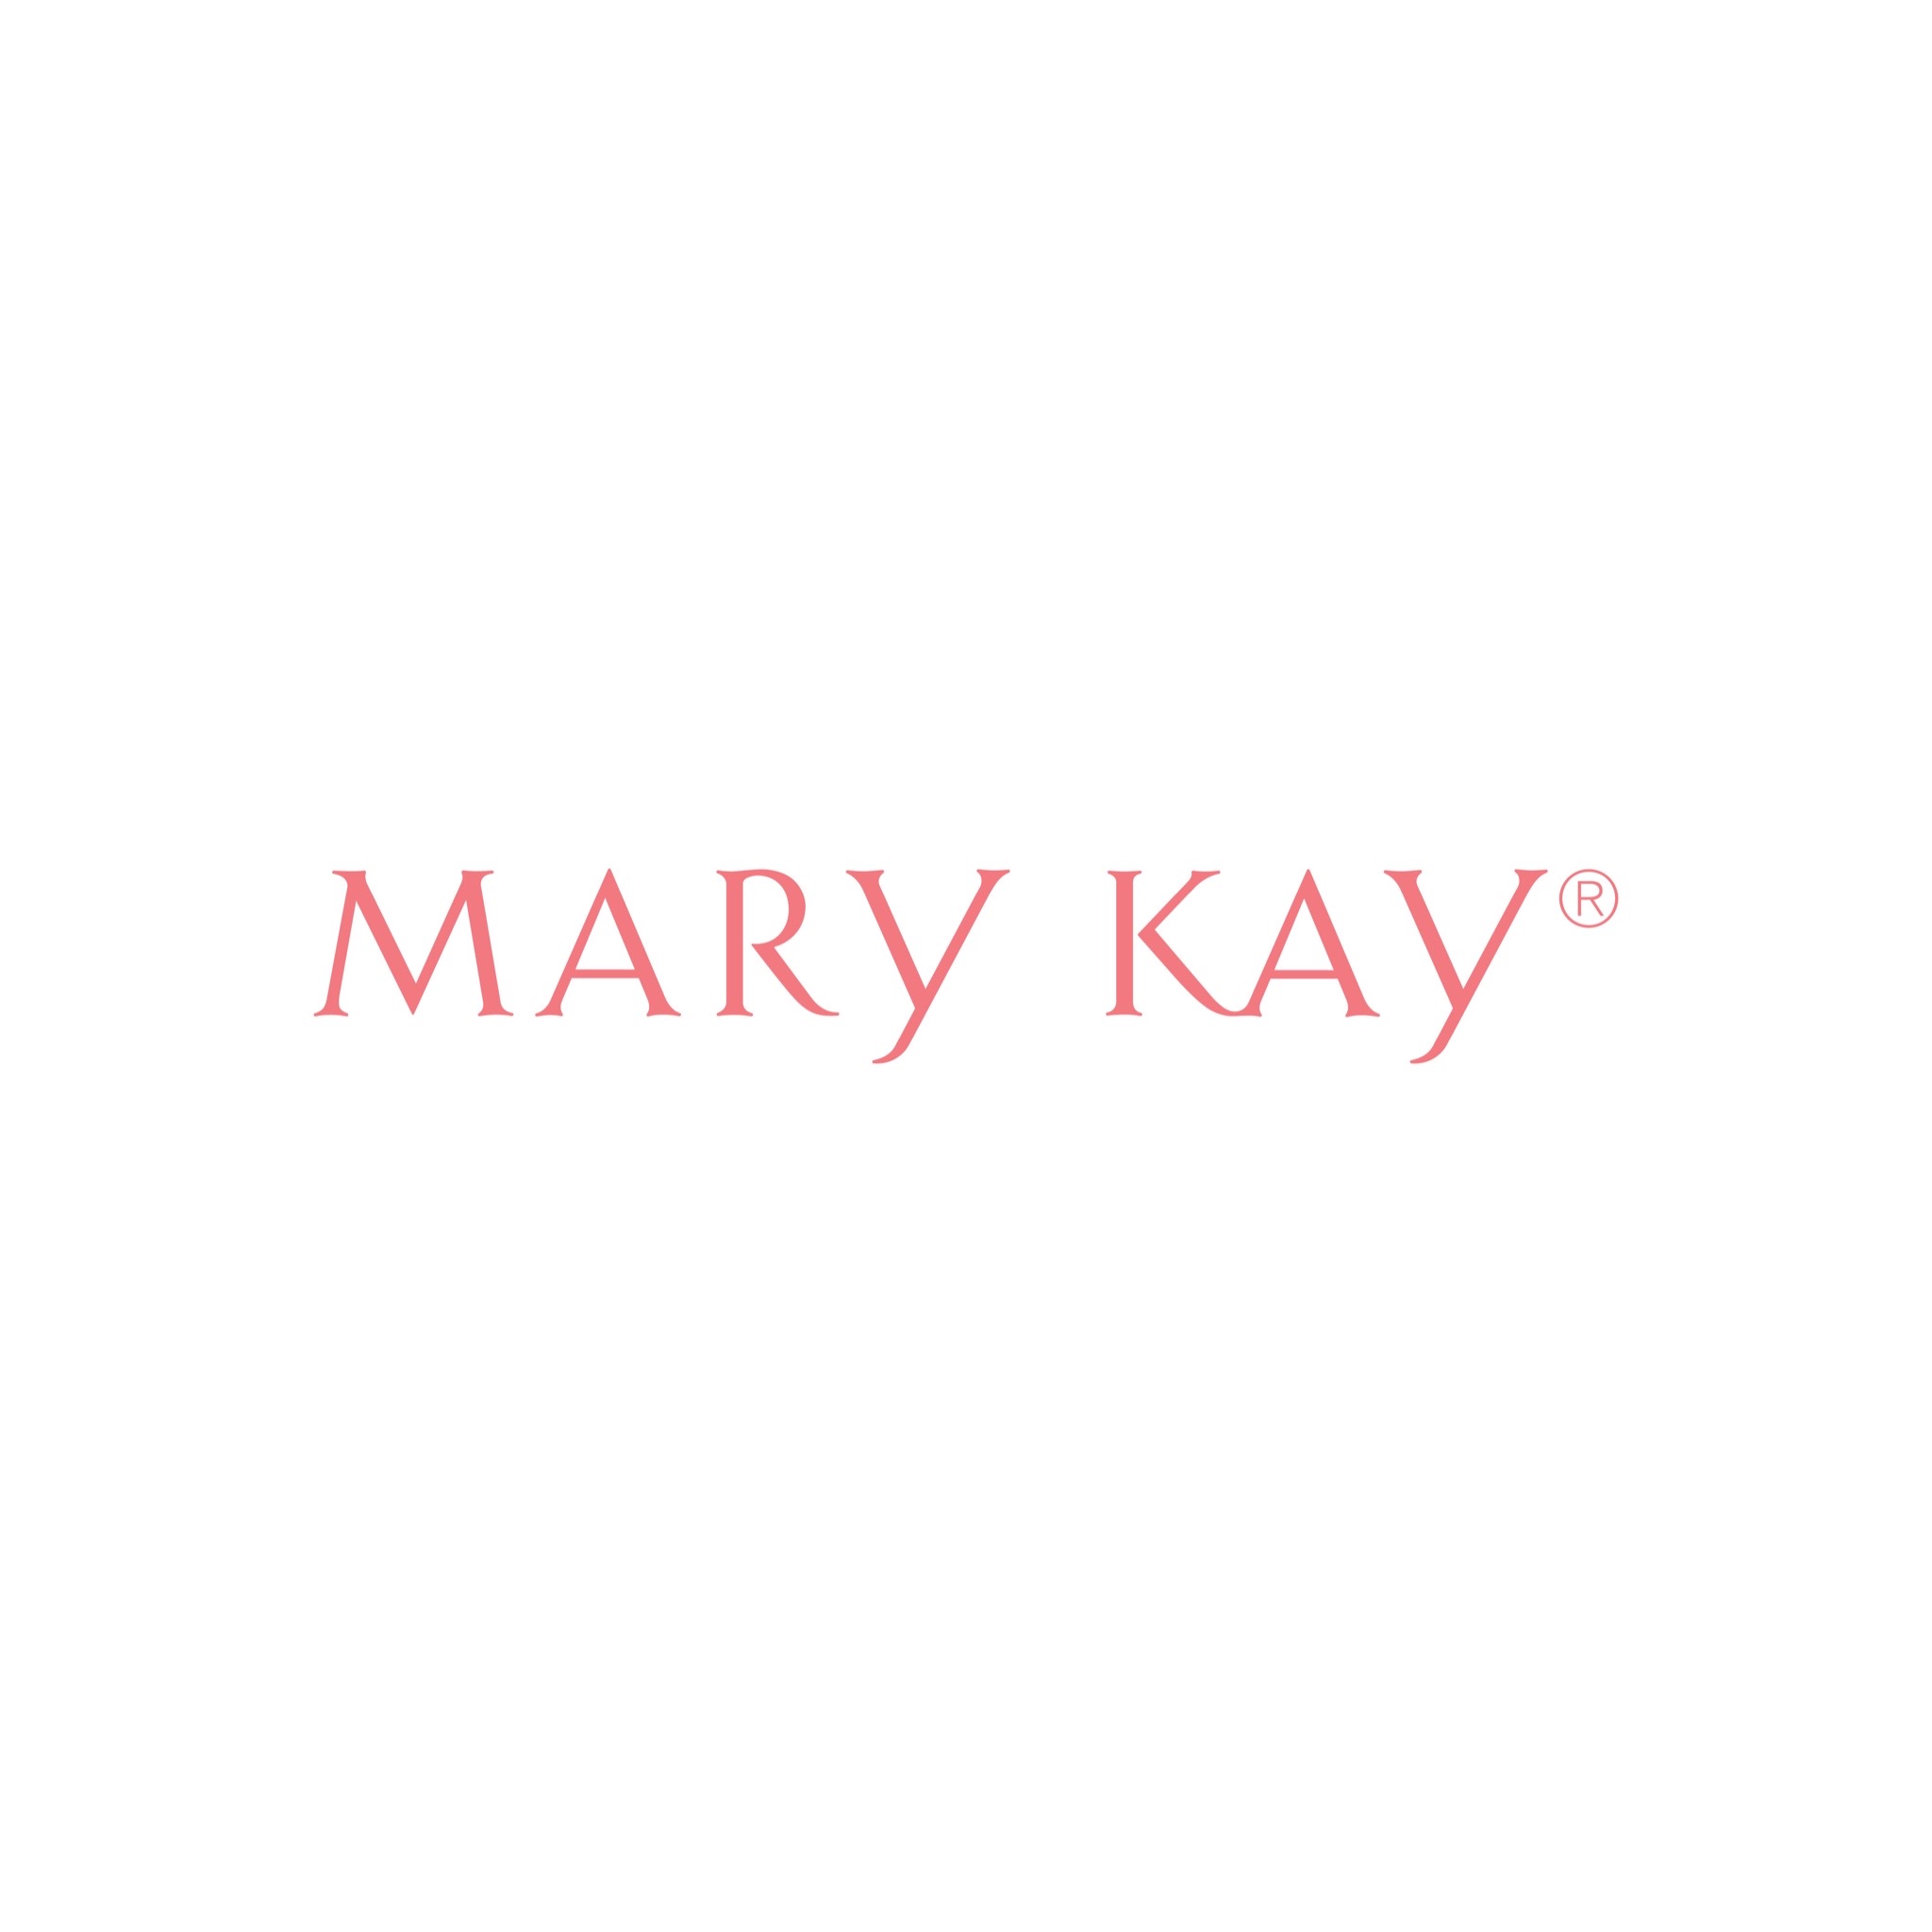 294-mary-kay-bw-2-1647898665114.jpg